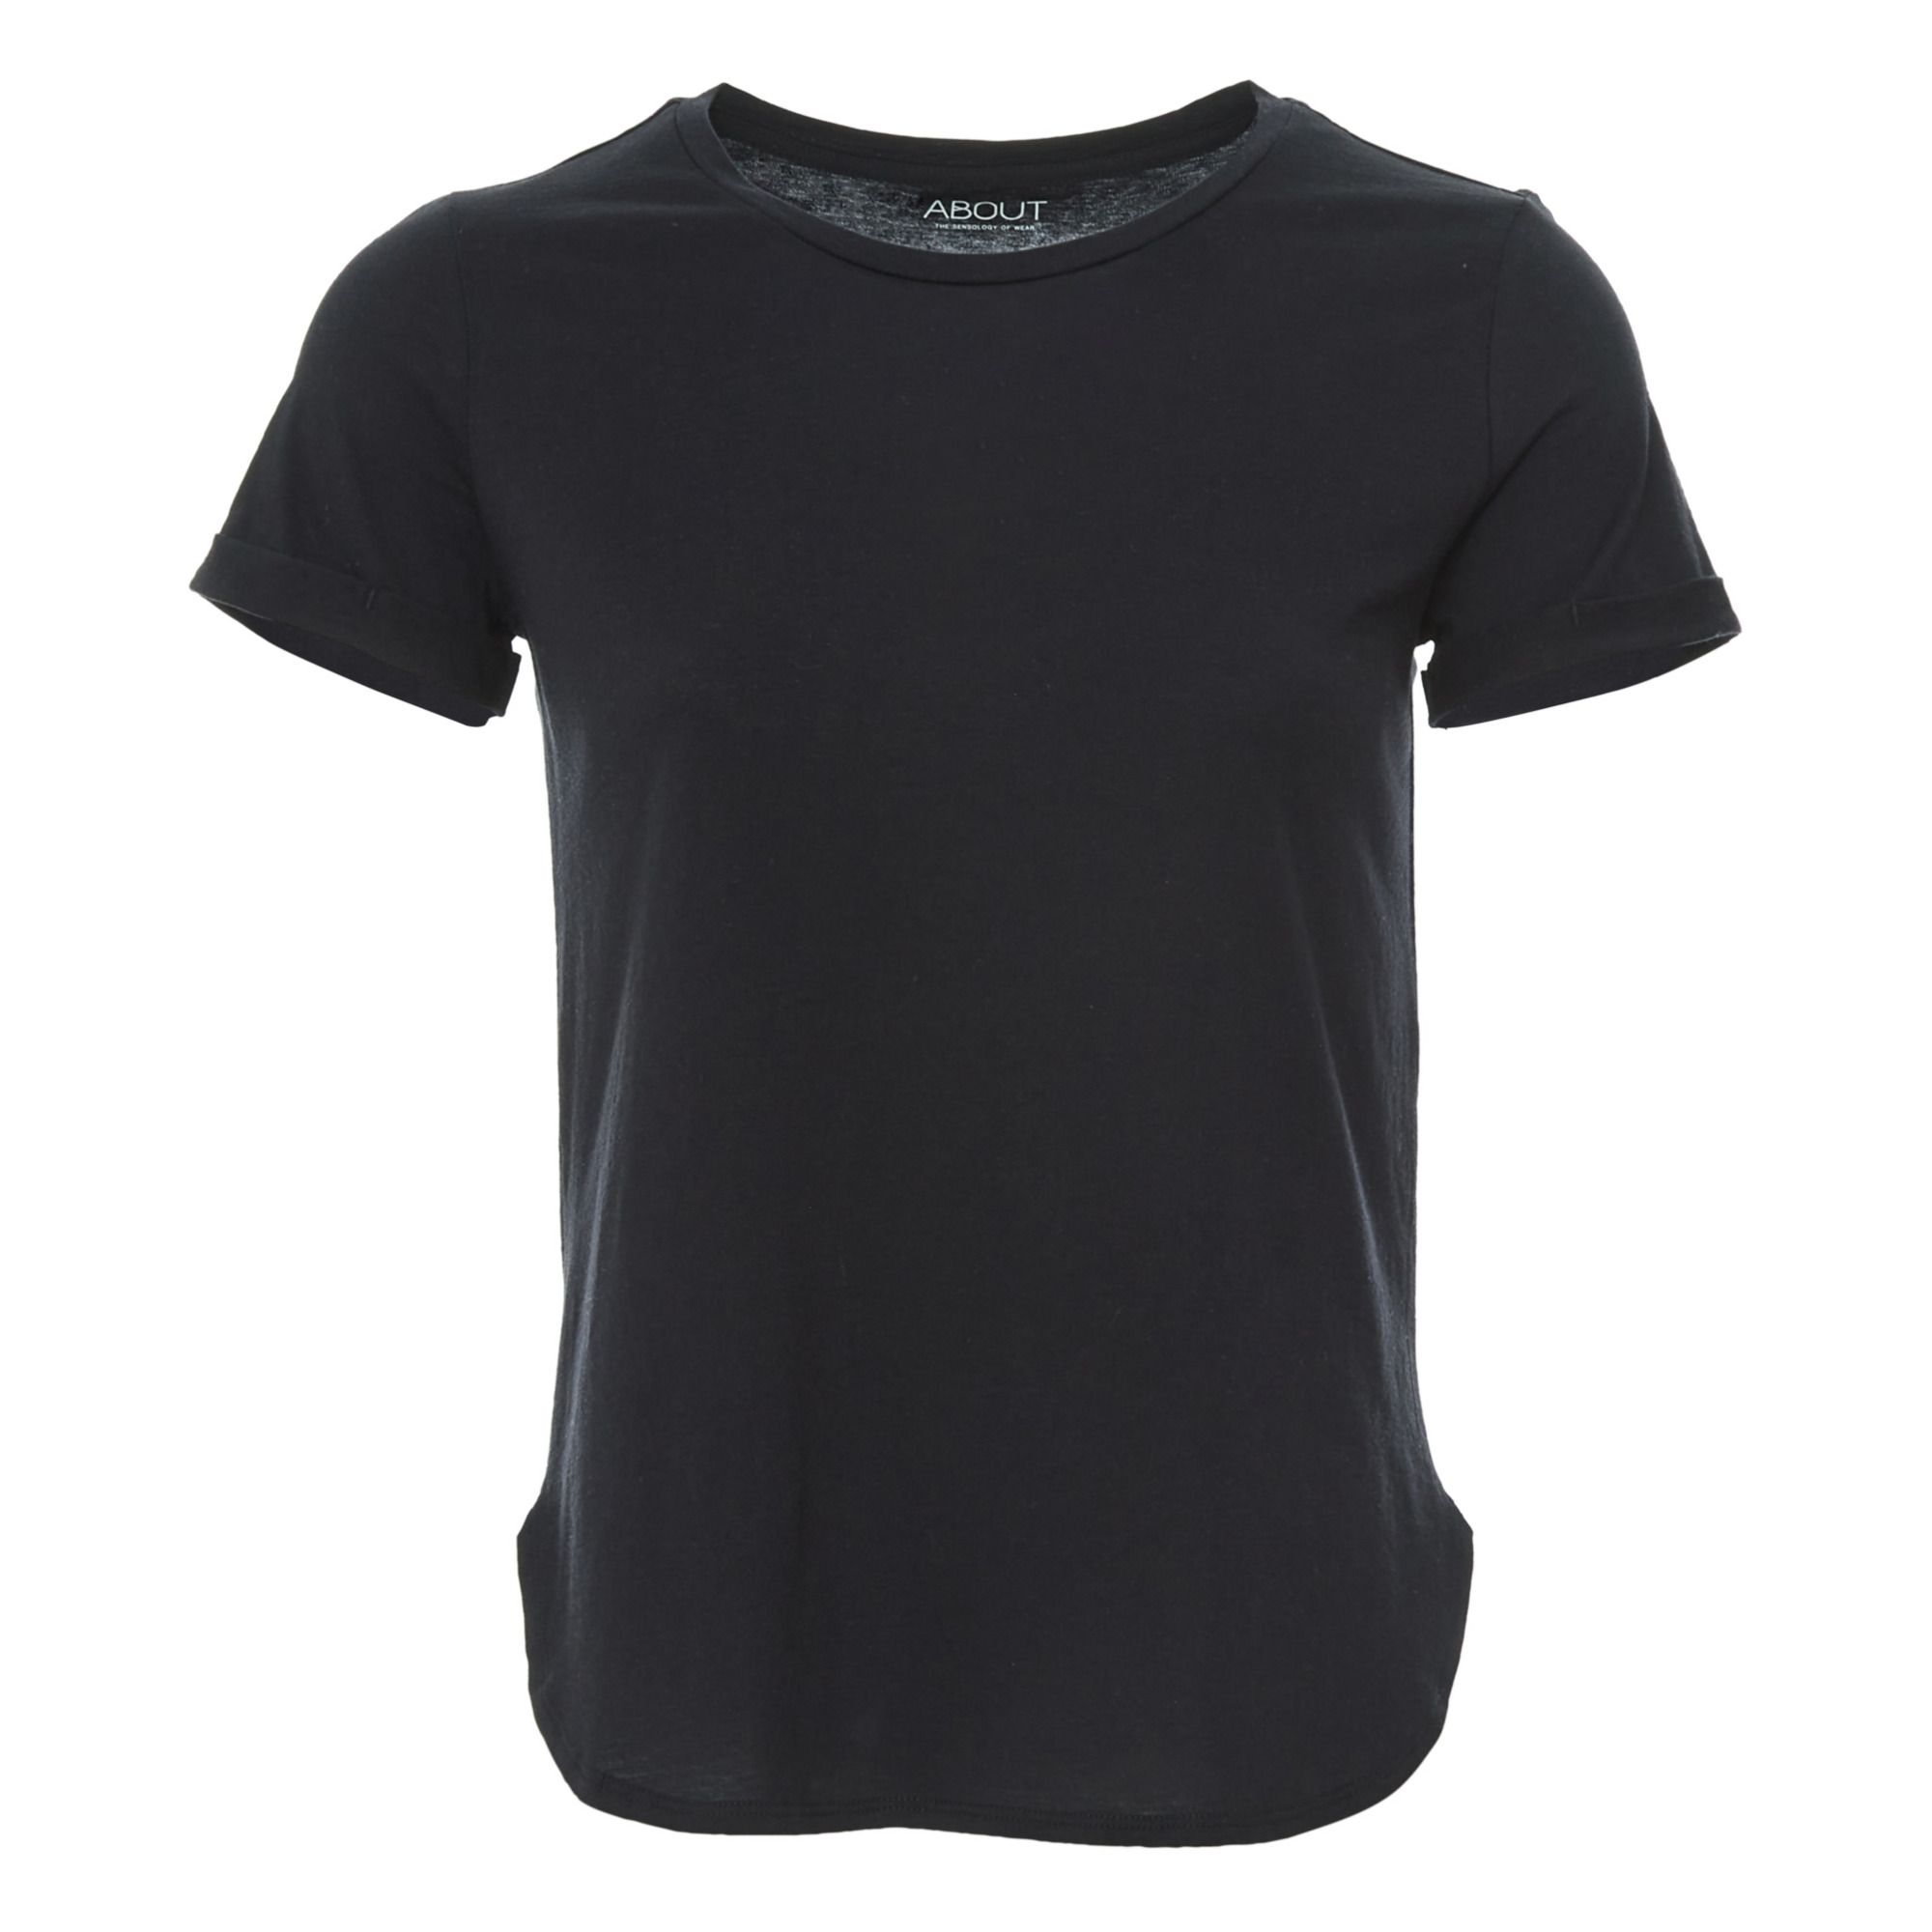 About - T-Shirt Velyva Coton Bio - Femme - Noir